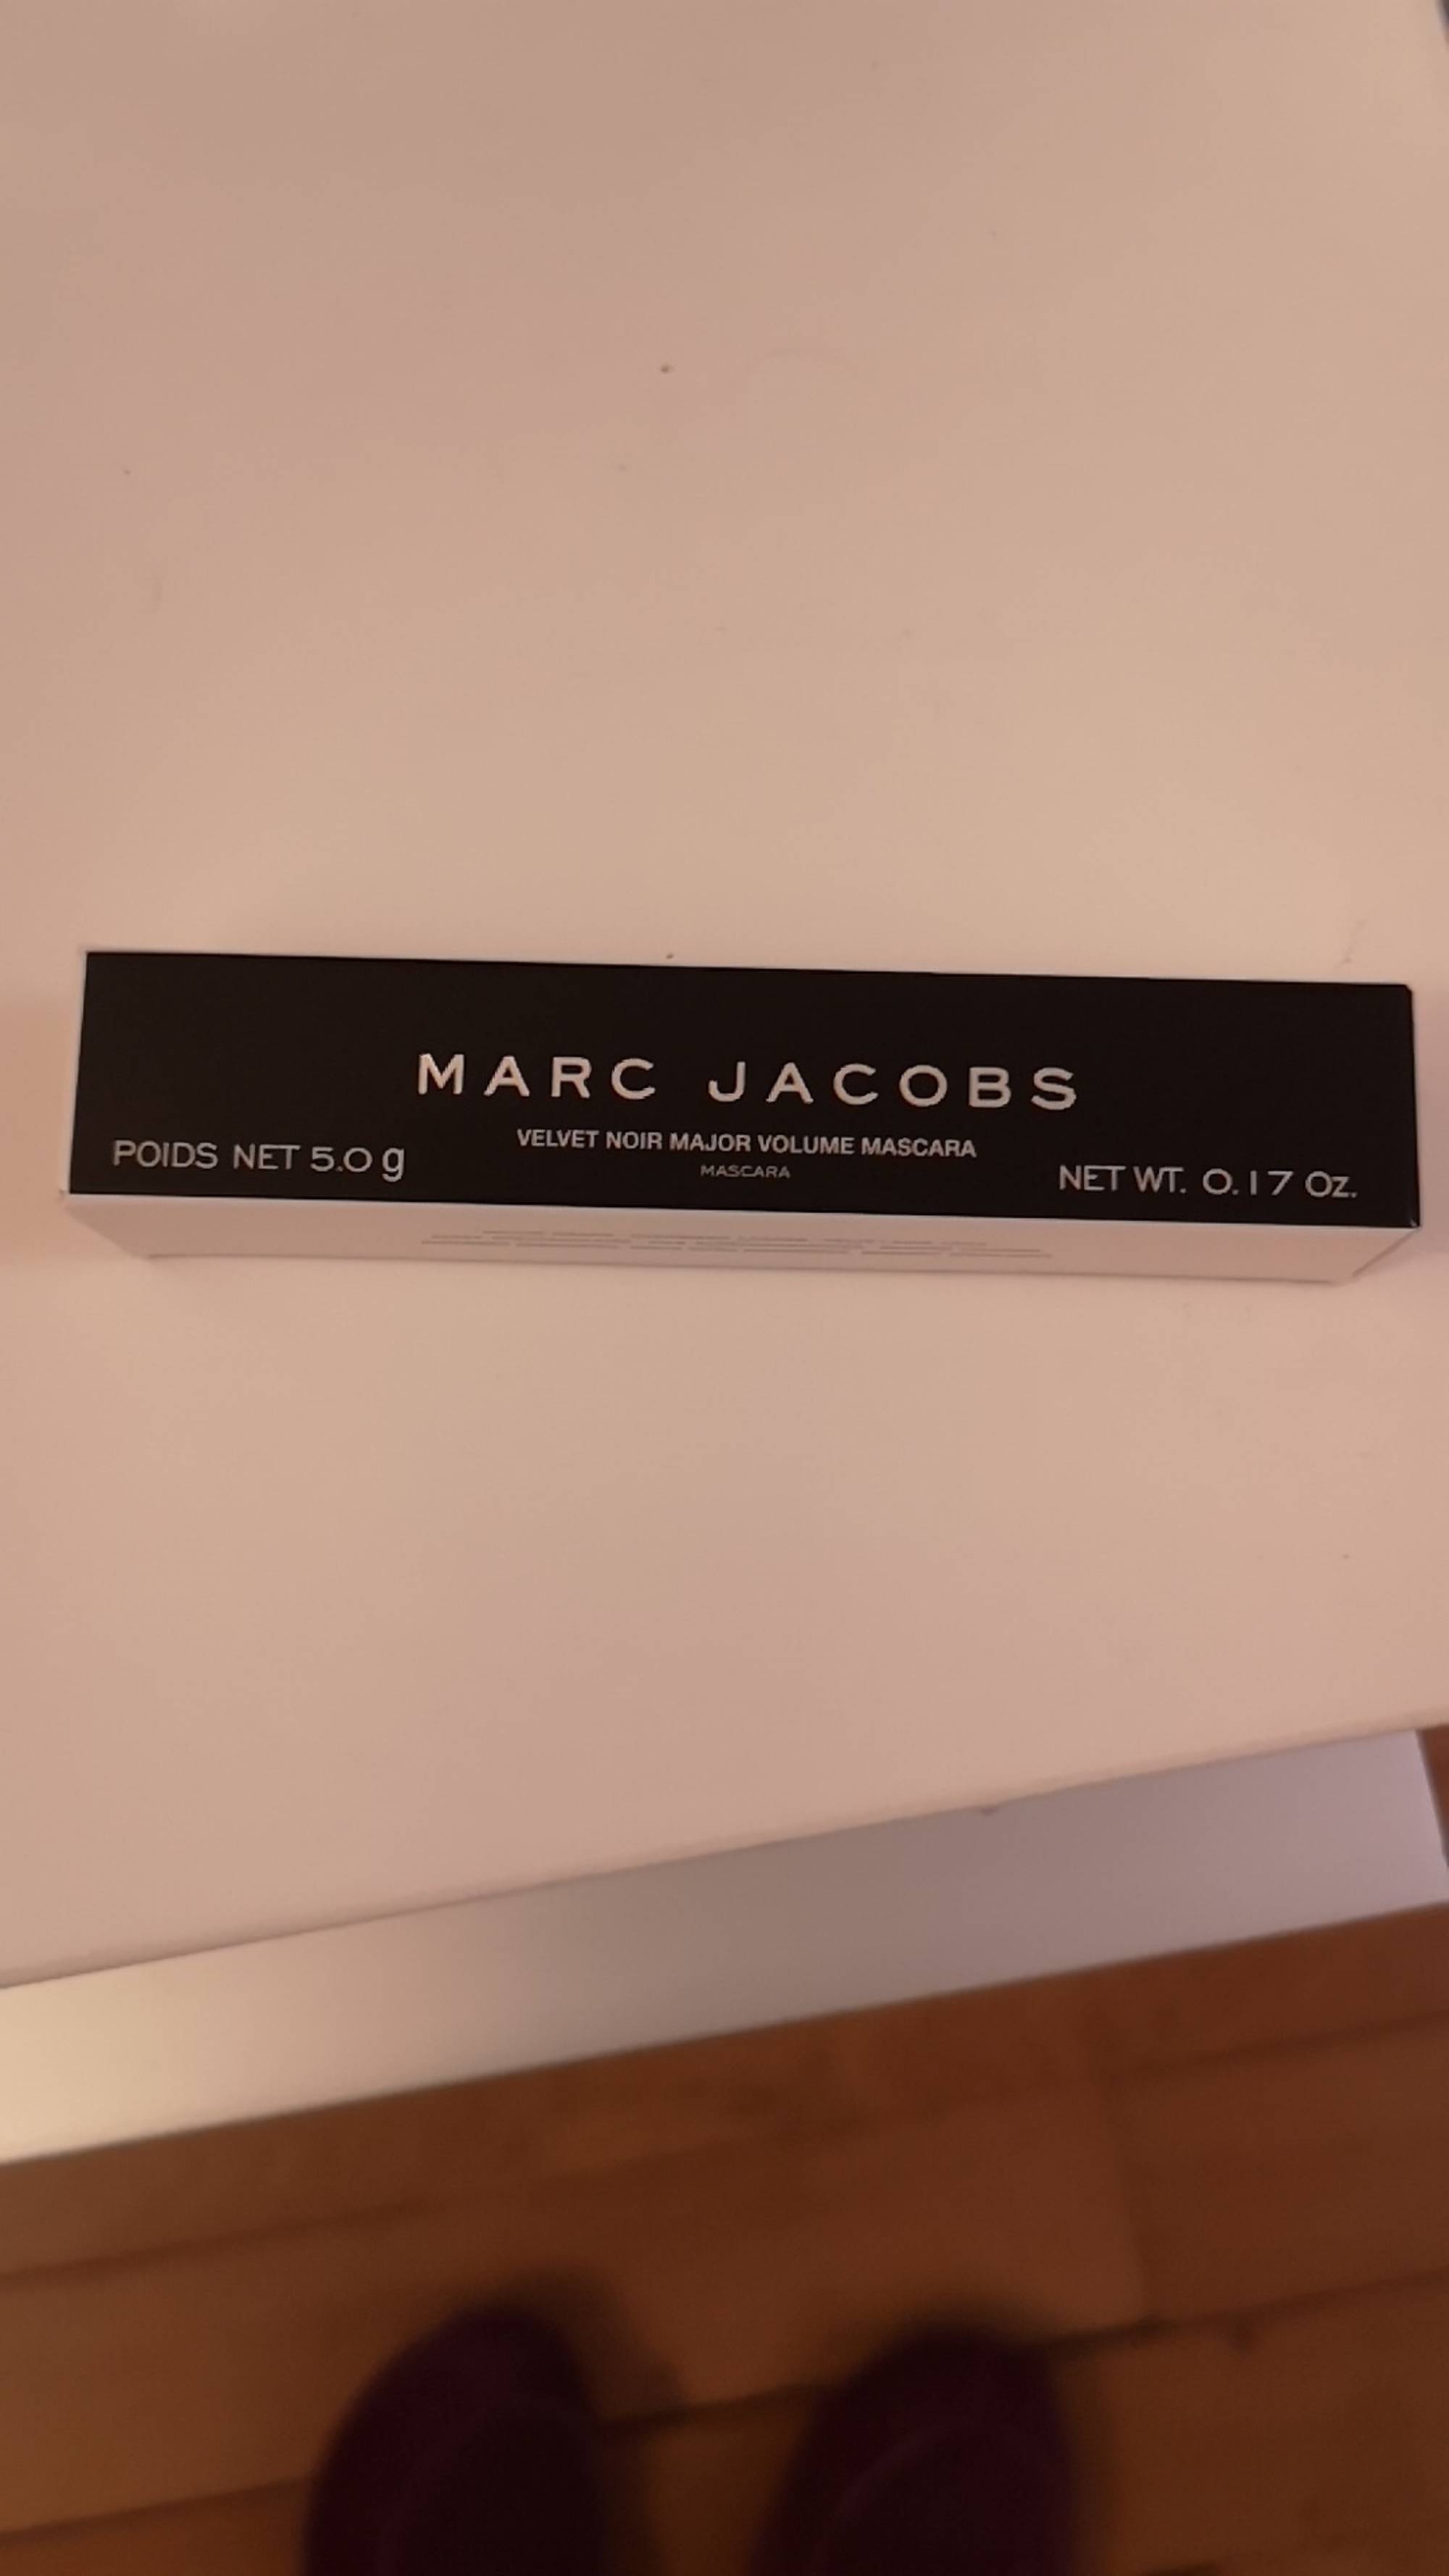 MARC JACOBS - Velvet noir - Major volume mascara